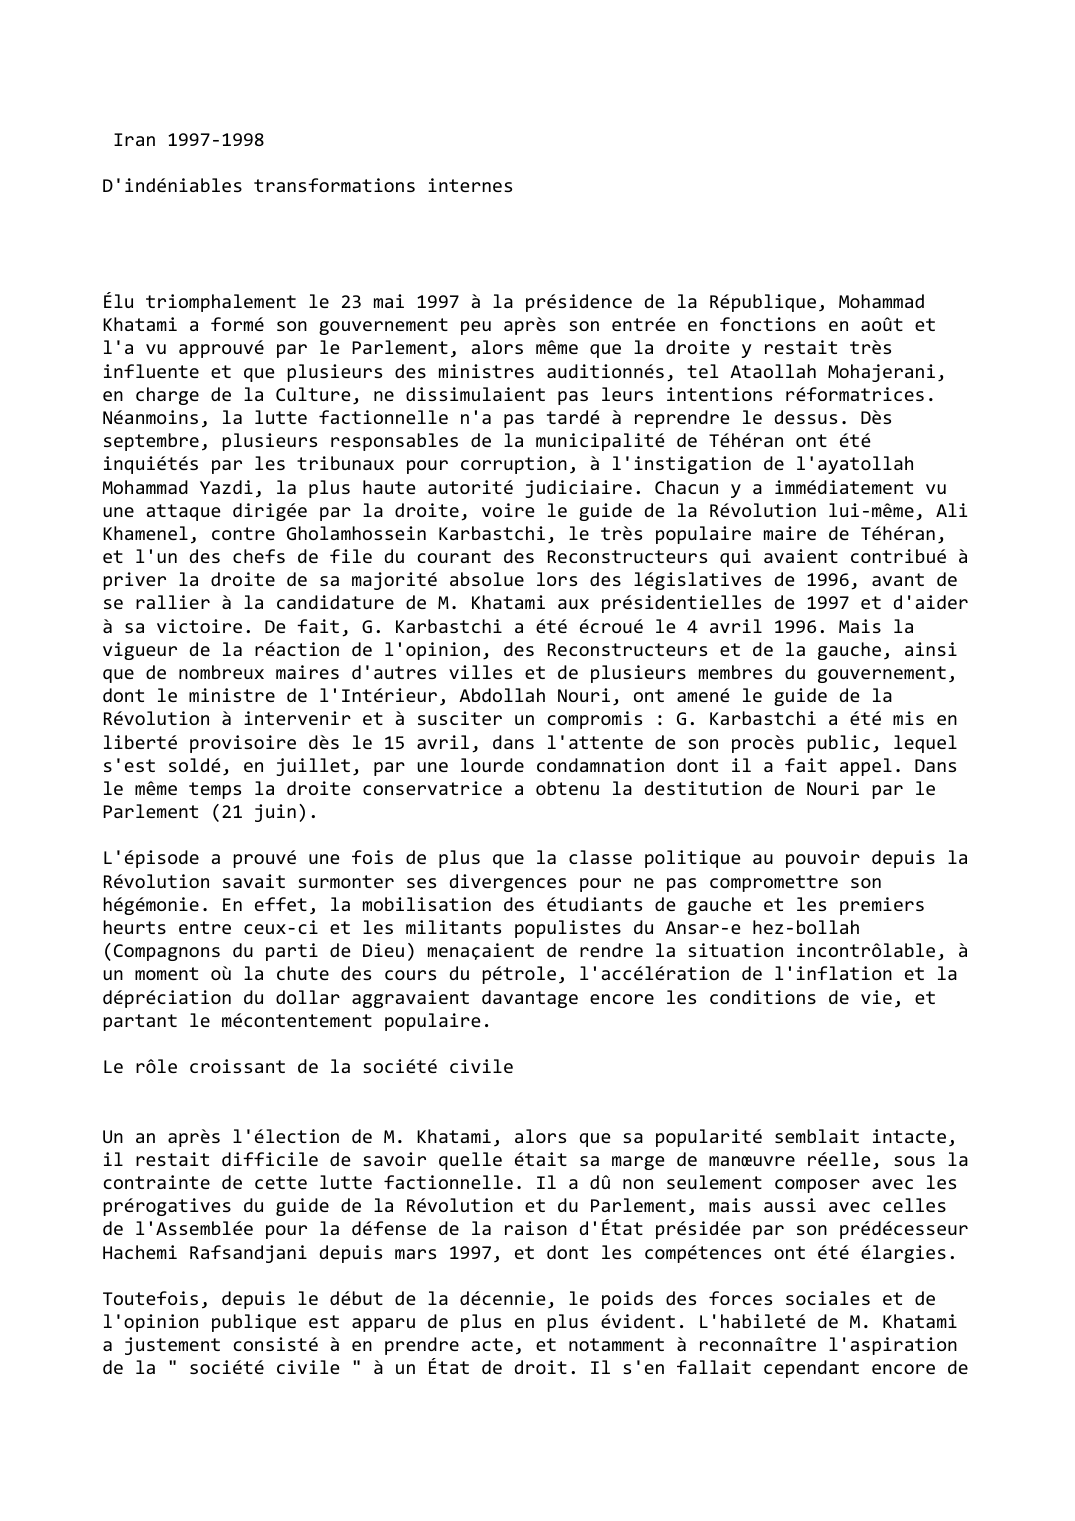 Prévisualisation du document Iran (1997-1998)

D'indéniables transformations internes